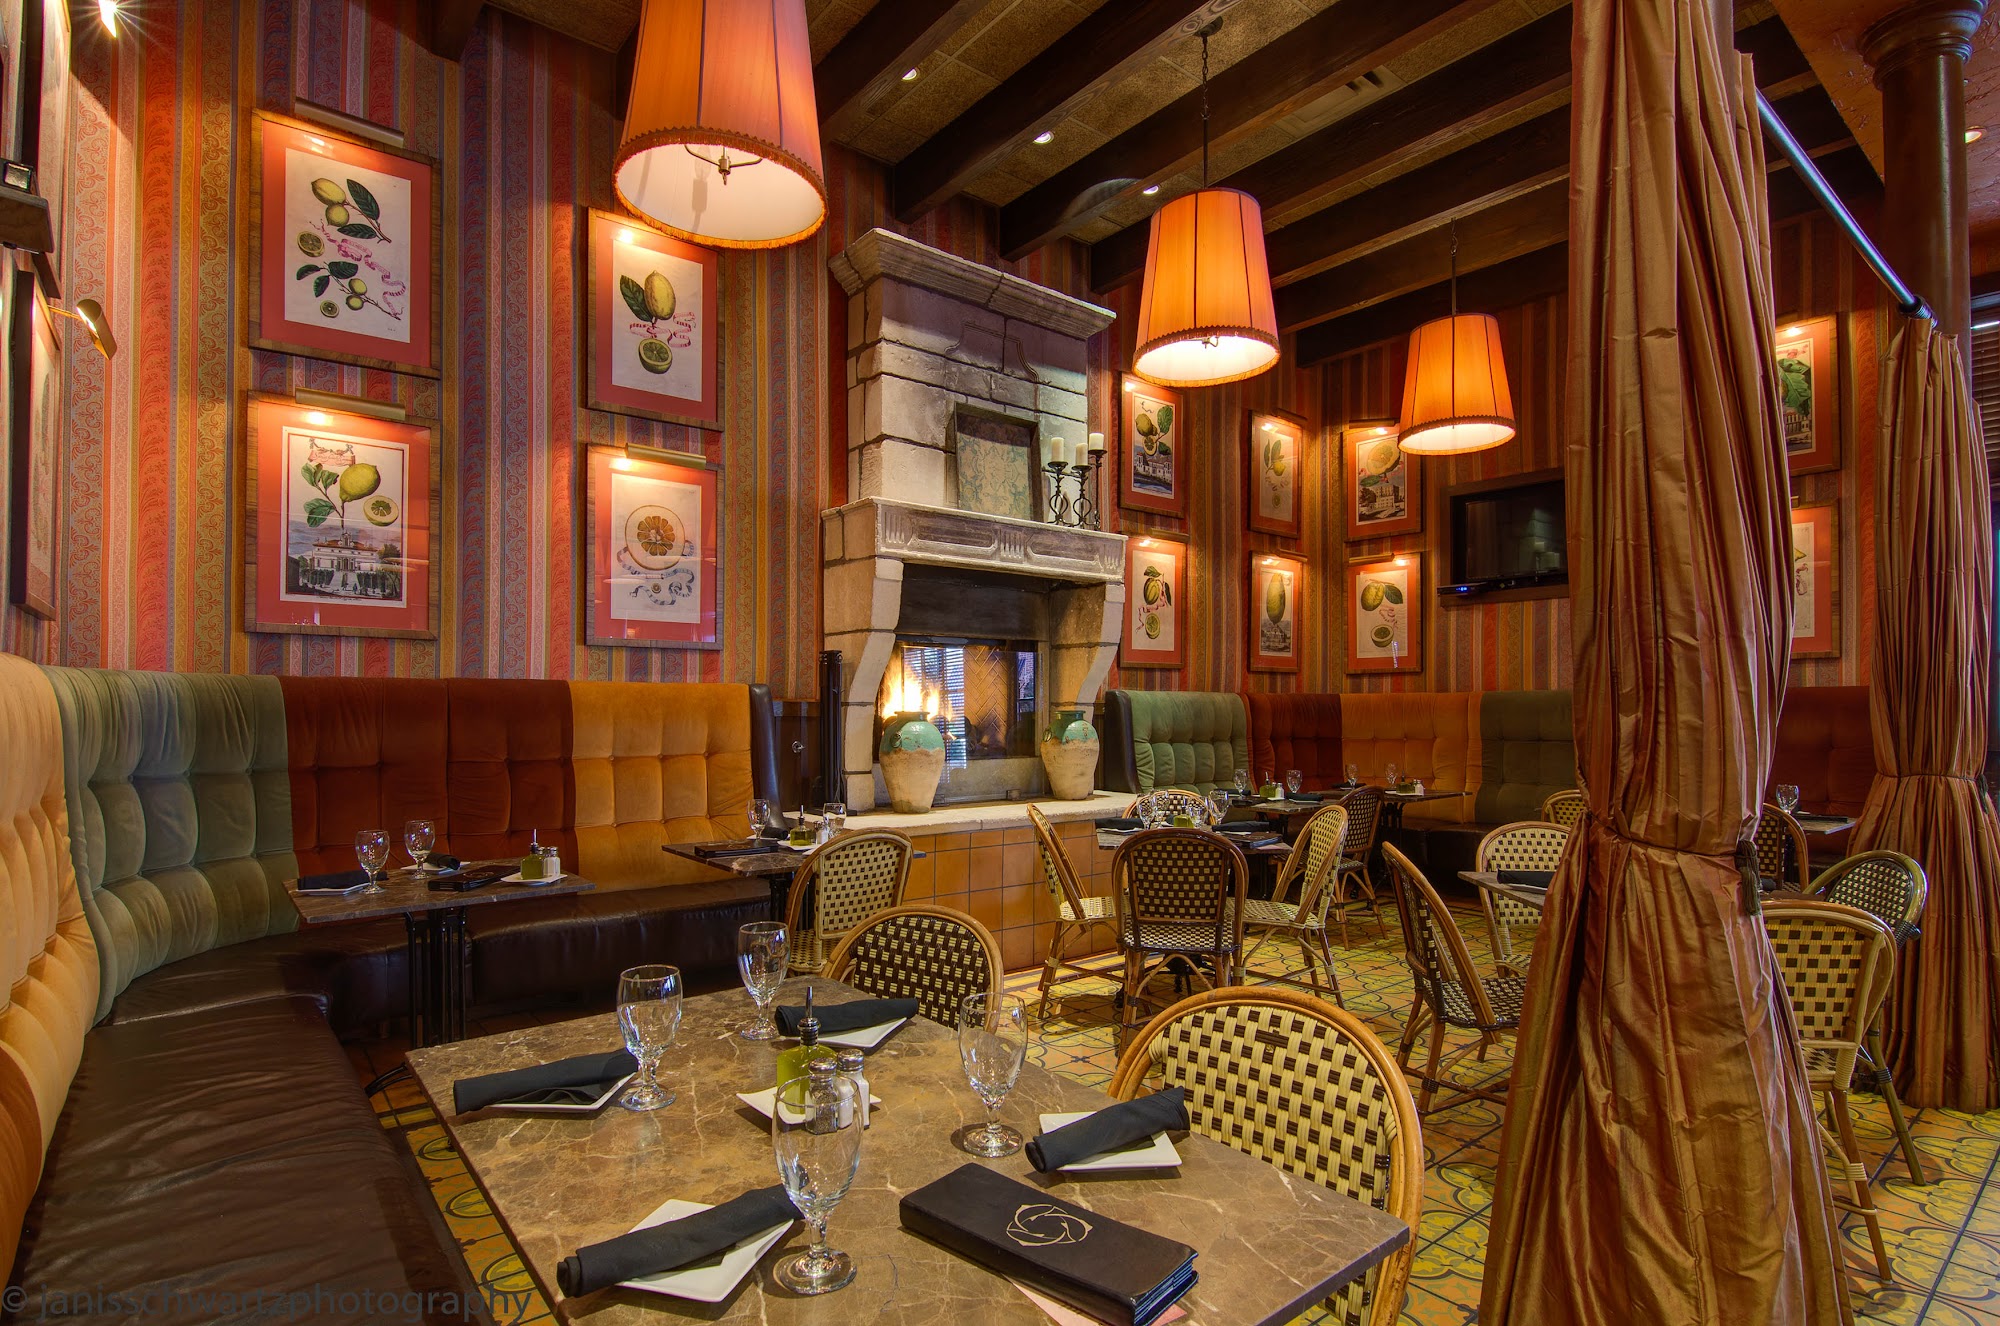 Trezo Mare Restaurant & Lounge